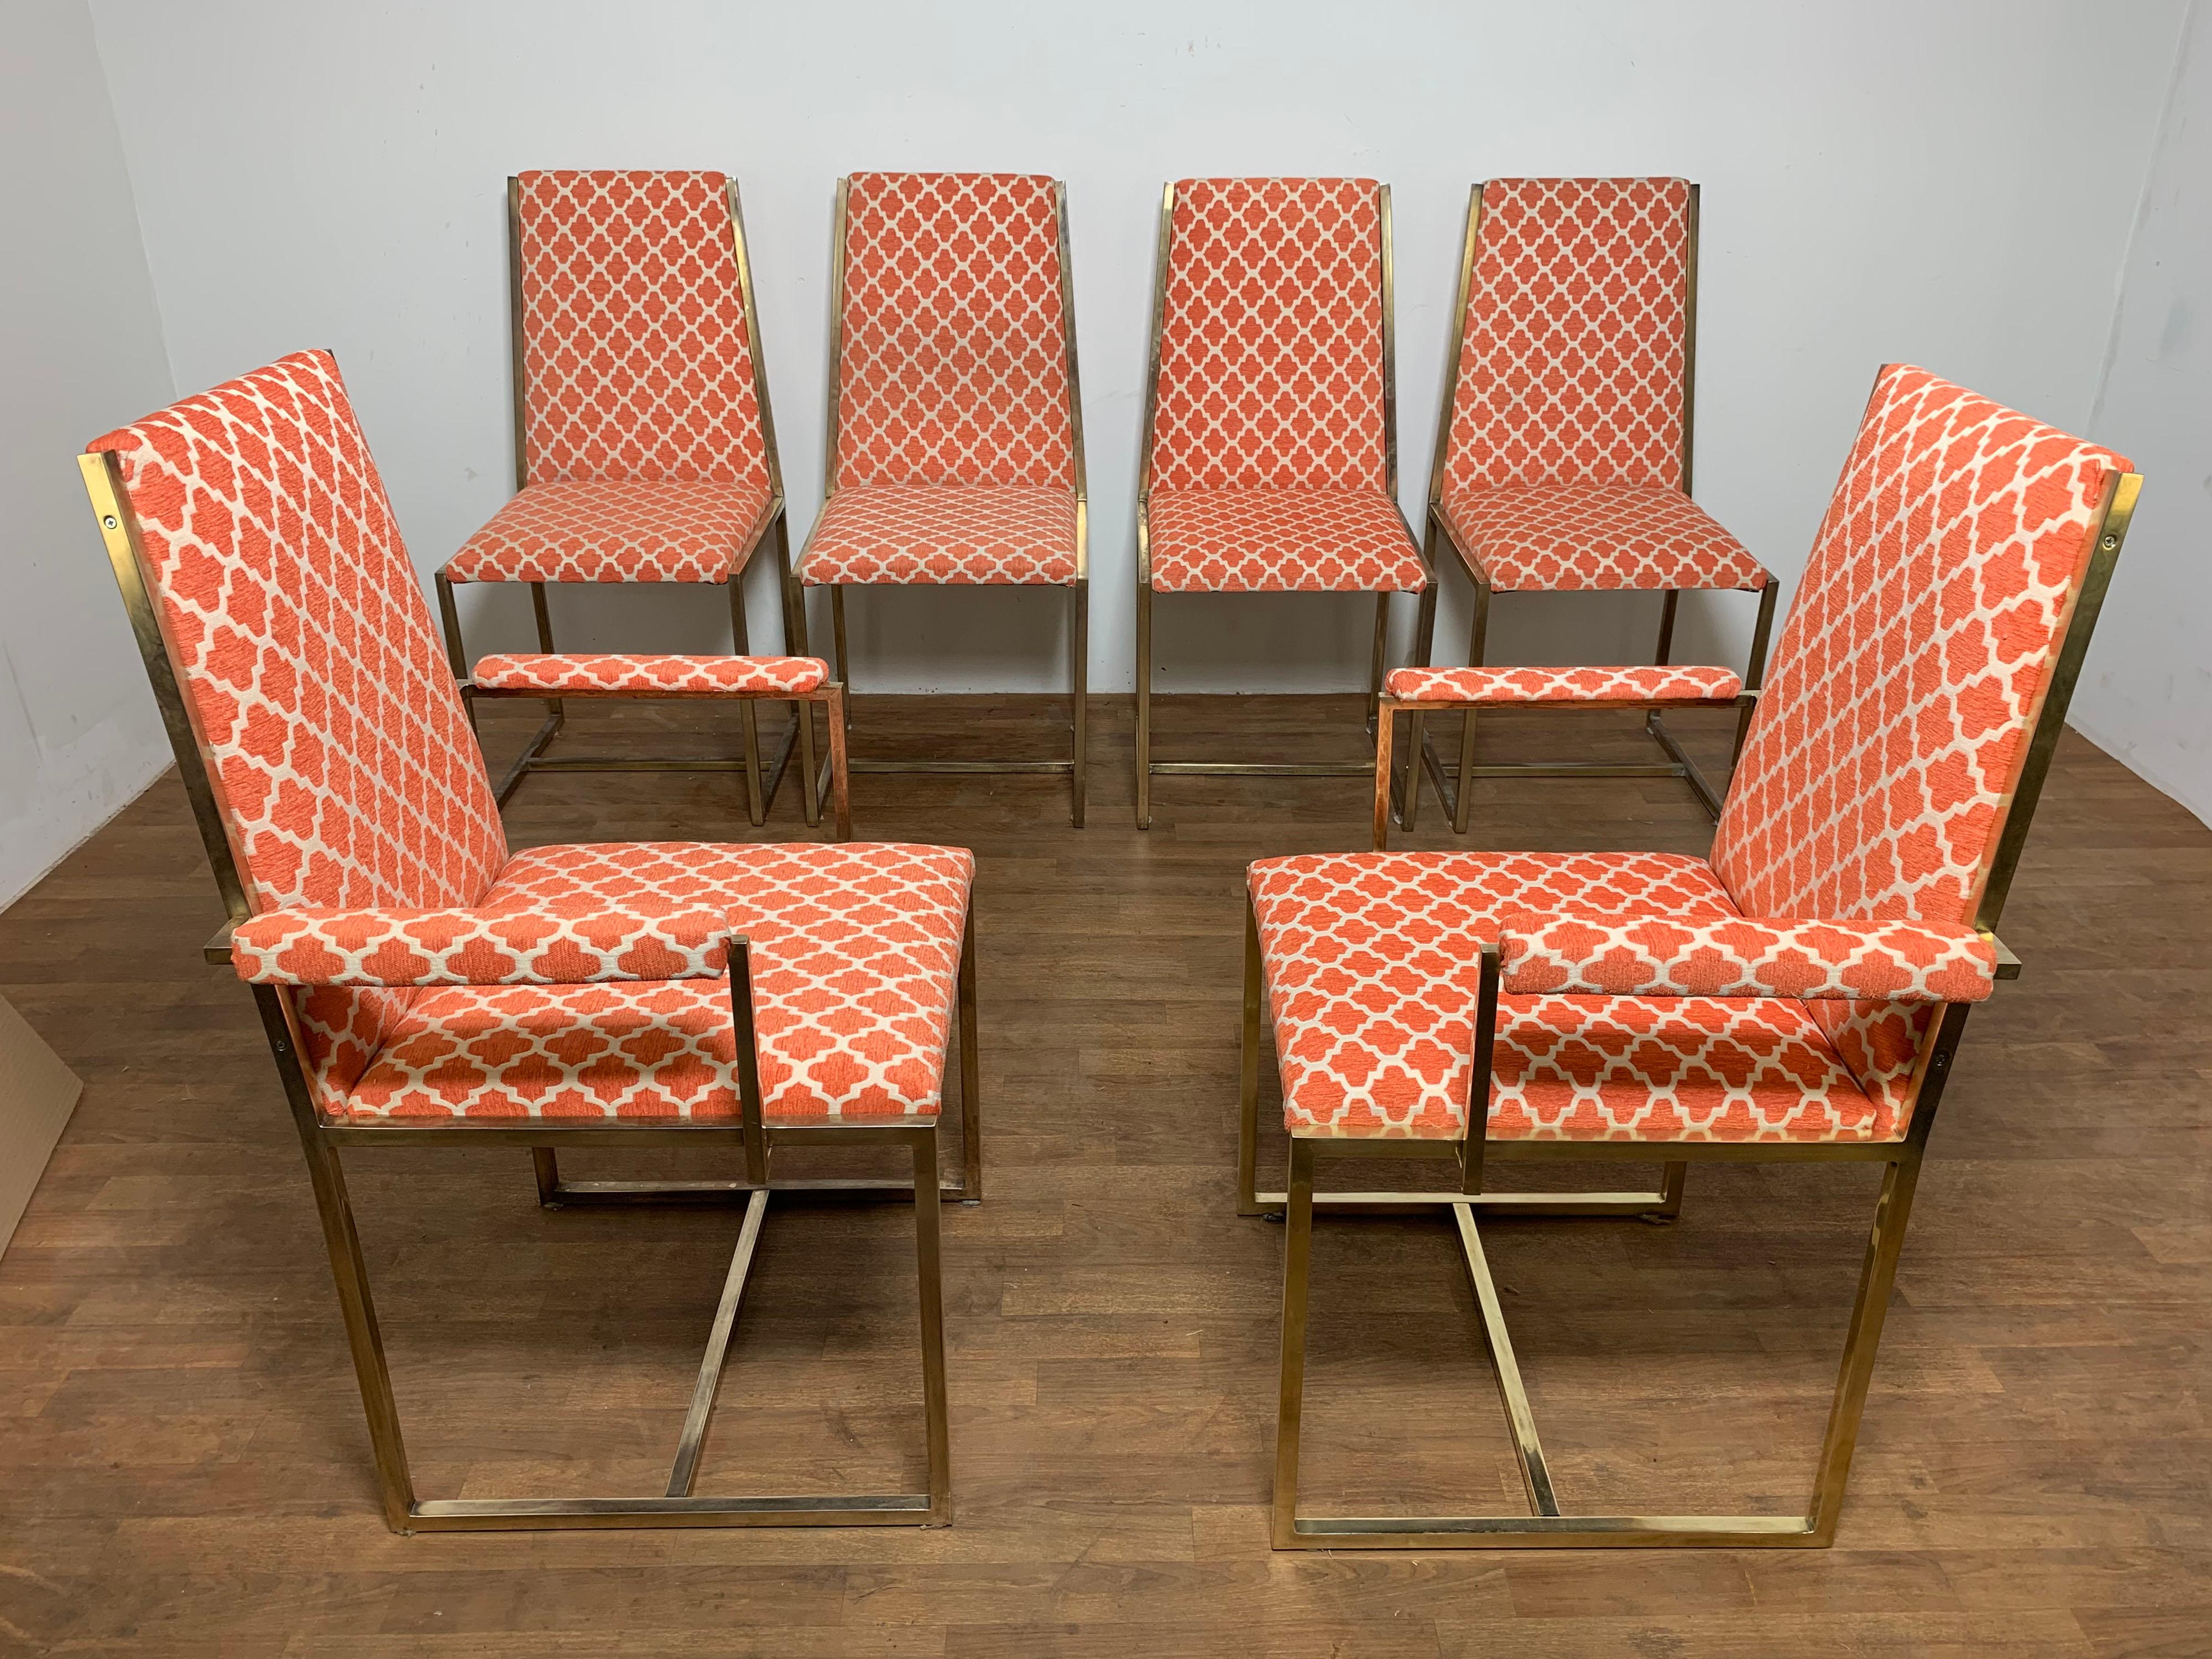 Satz von sechs messingumrandeten Esszimmerstühlen mit hoher Rückenlehne von Mastercraft, ca. 1960er Jahre. 

Die Sessel sind 24,75